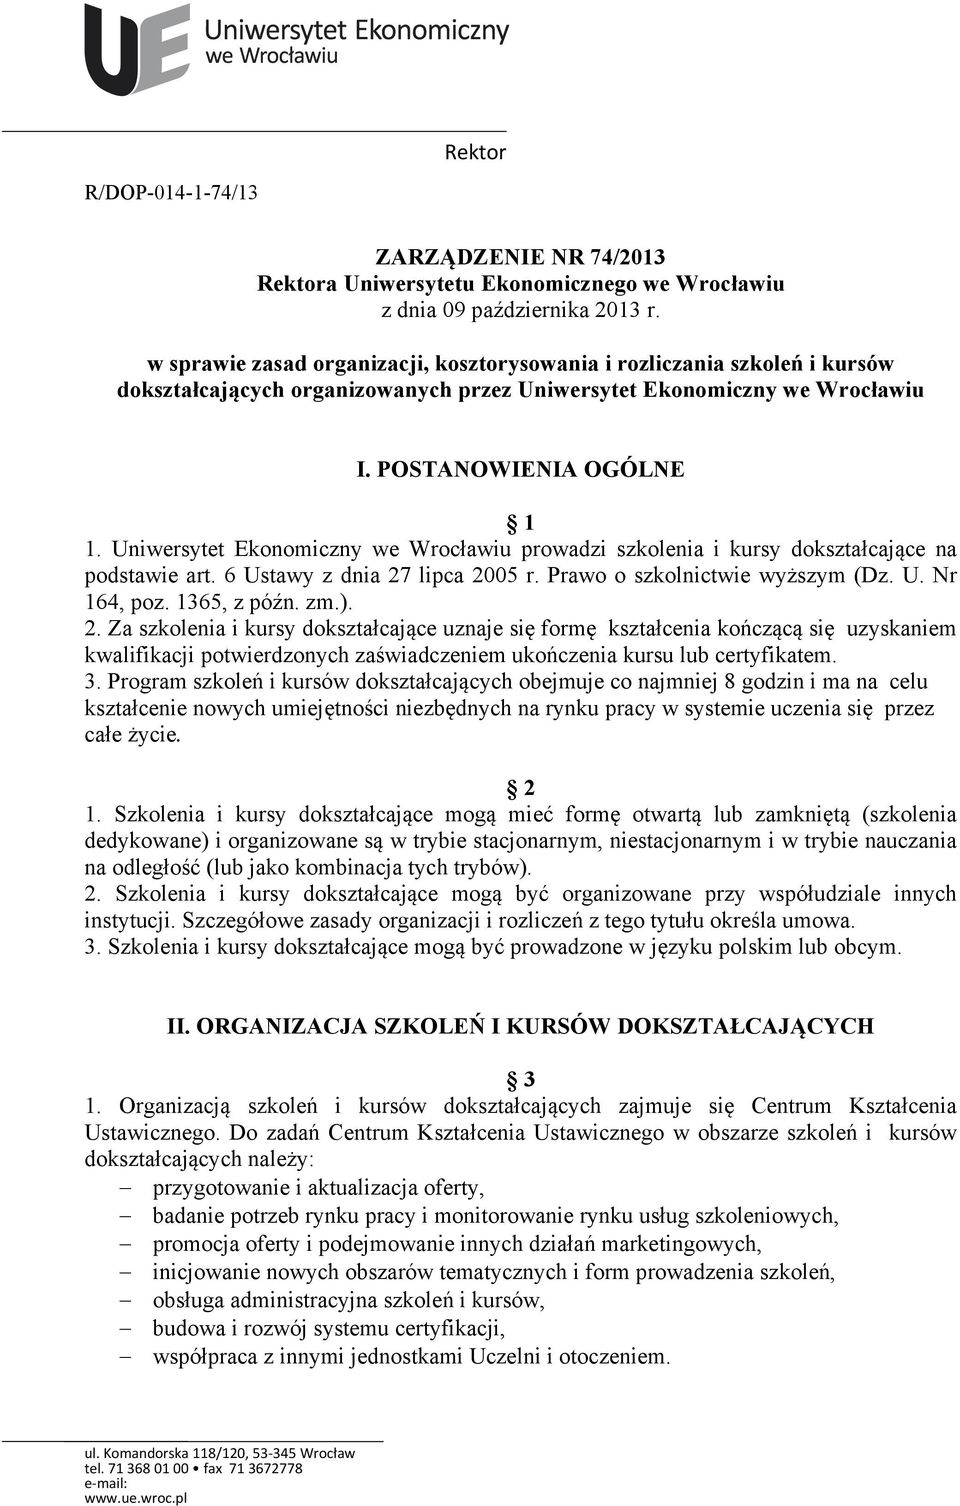 Uniwersytet Ekonomiczny we Wrocławiu prowadzi szkolenia i kursy dokształcające na podstawie art. 6 Ustawy z dnia 27 lipca 2005 r. Prawo o szkolnictwie wyższym (Dz. U. Nr 164, poz. 1365, z późn. zm.).